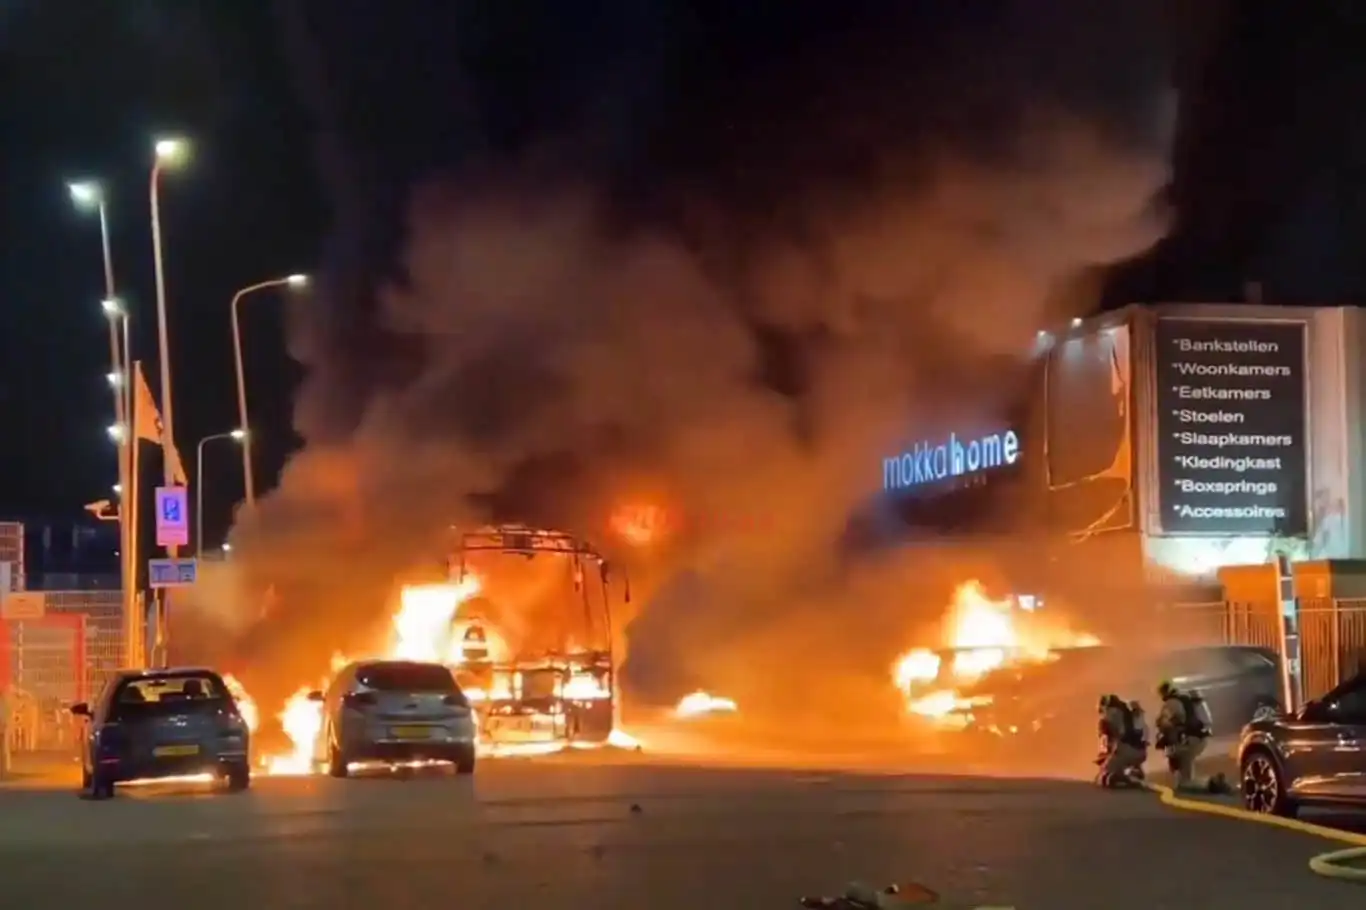 Hollanda’da şiddet olayları artıyor: Araçlar ateşe verildi